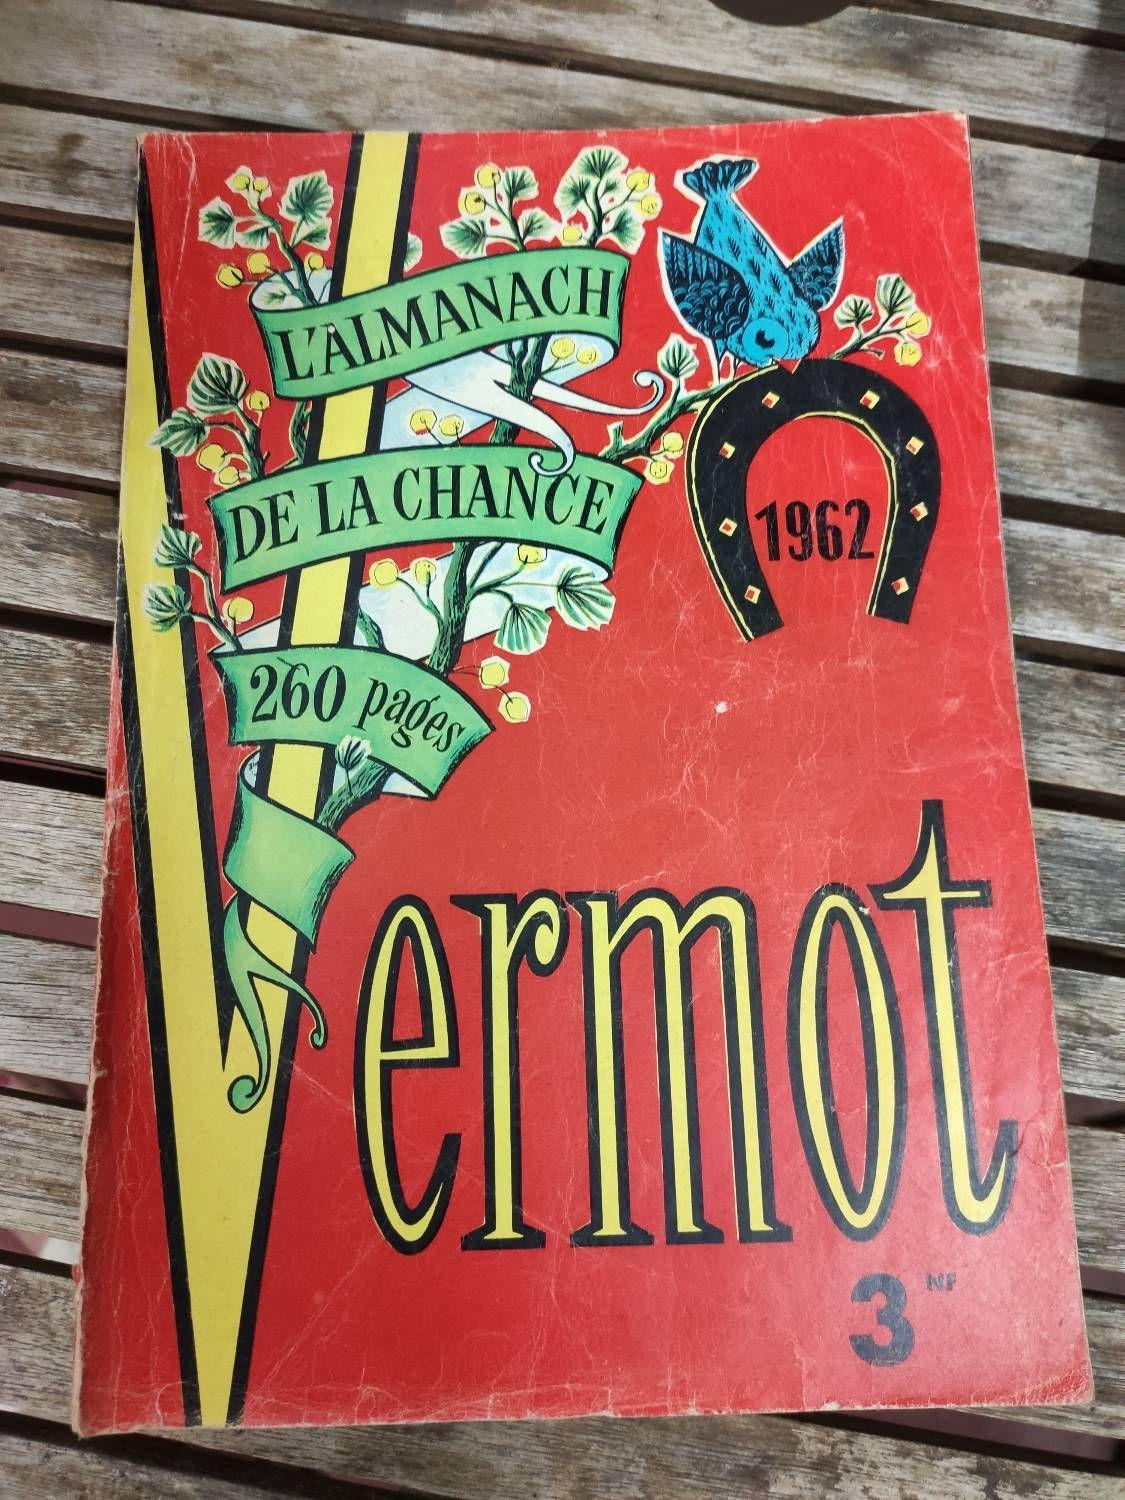 L'Almanach Vermot” des jeunes et des anciens…